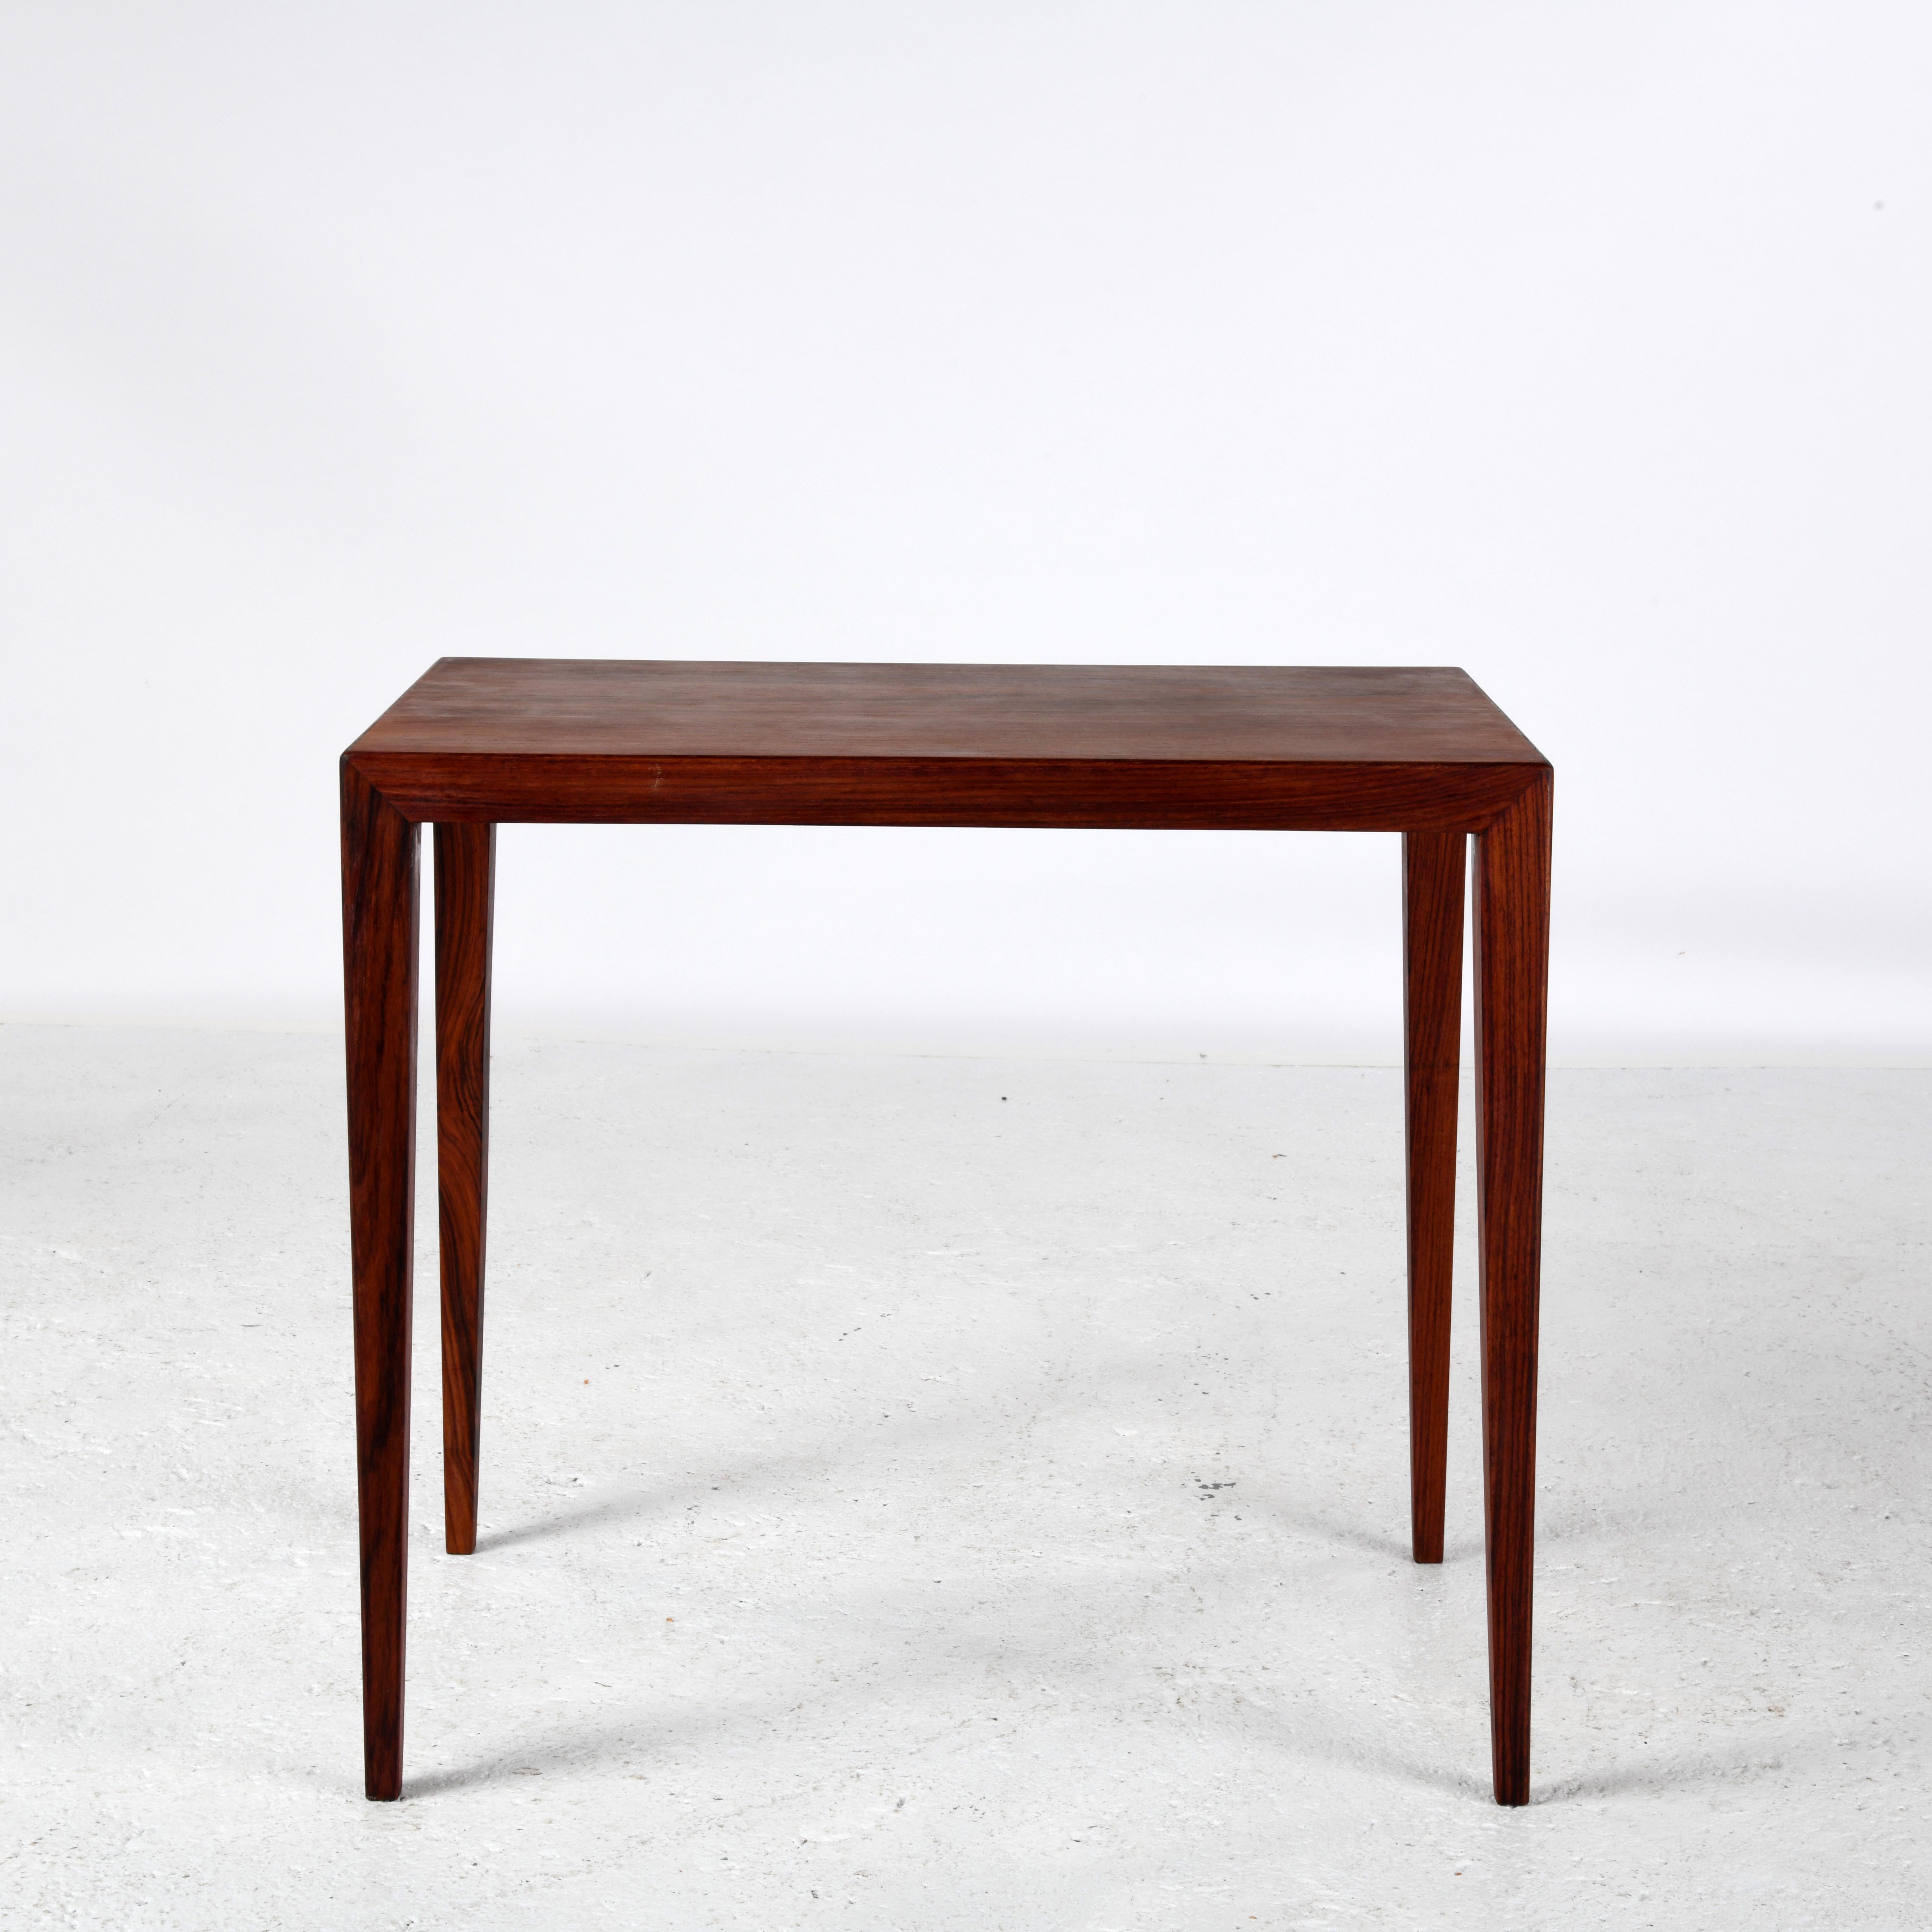 Petite table basse, conçue par Severin Hansen (1903-1979) dans les années 1960, éditée par Haslev Møbelfabrik au Danemark.
Une deuxième table du même modèle est également disponible.
Severin Hansen est connu pour son design extrêmement pur, dans